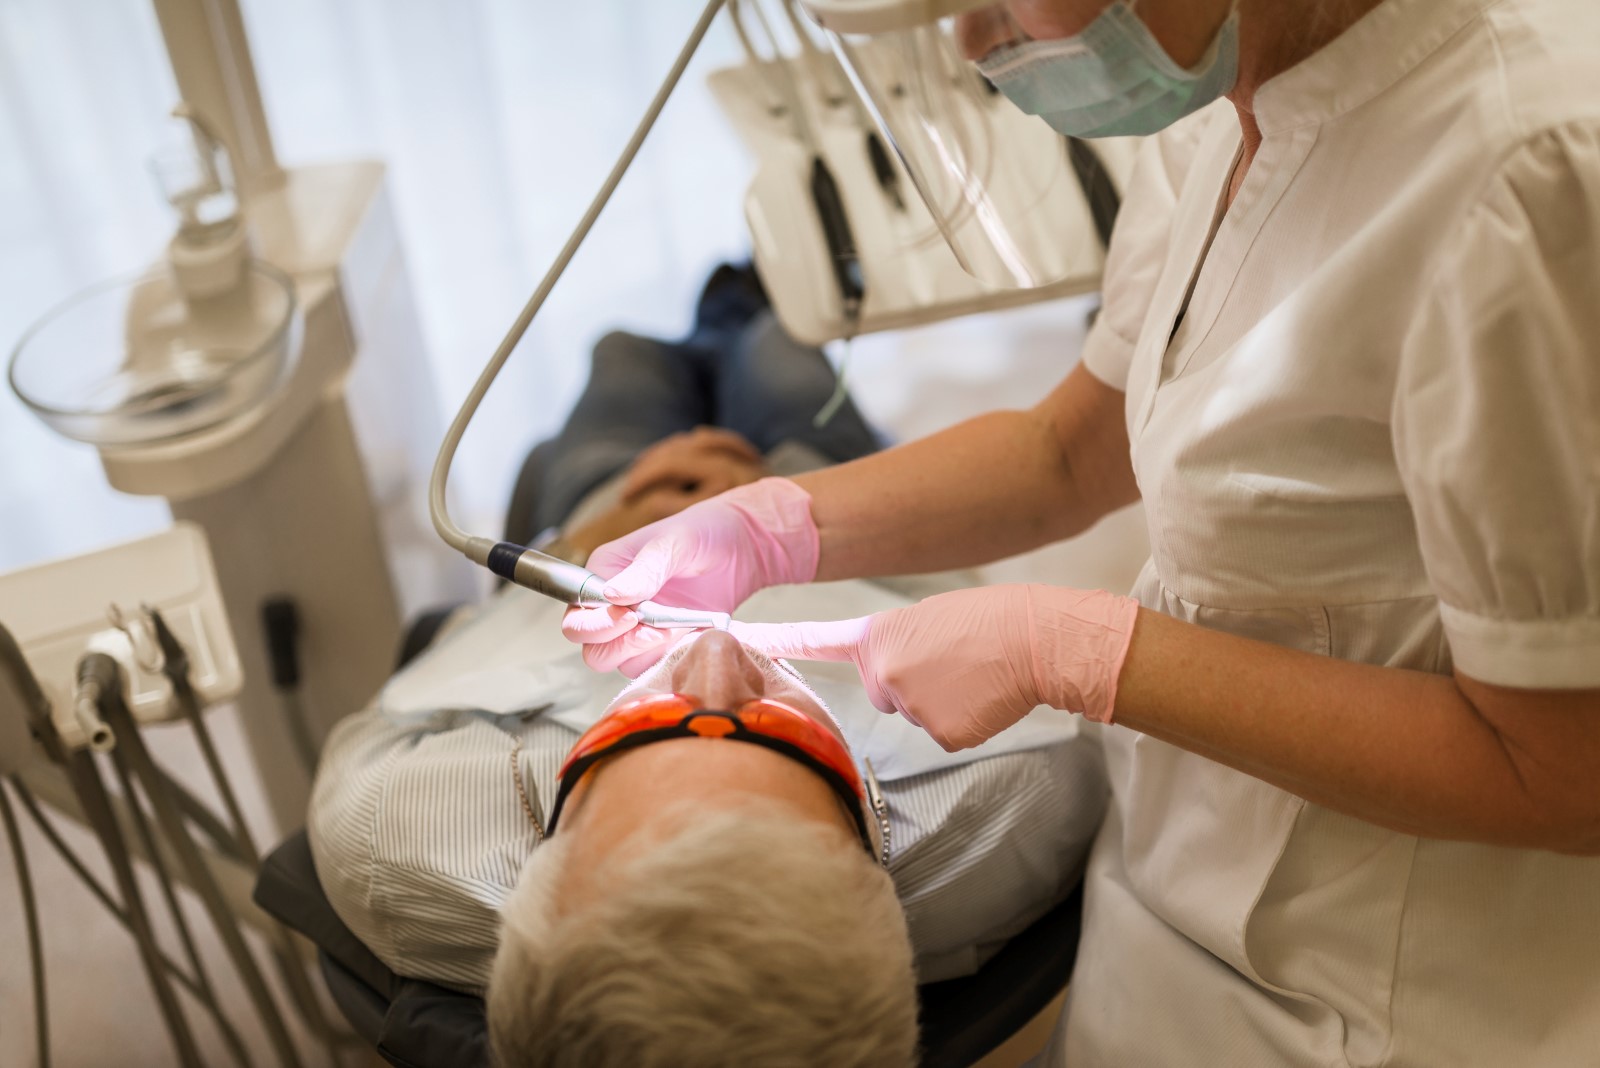 En tandläkare behandlar en patient som ligger på en behandlingsstol.